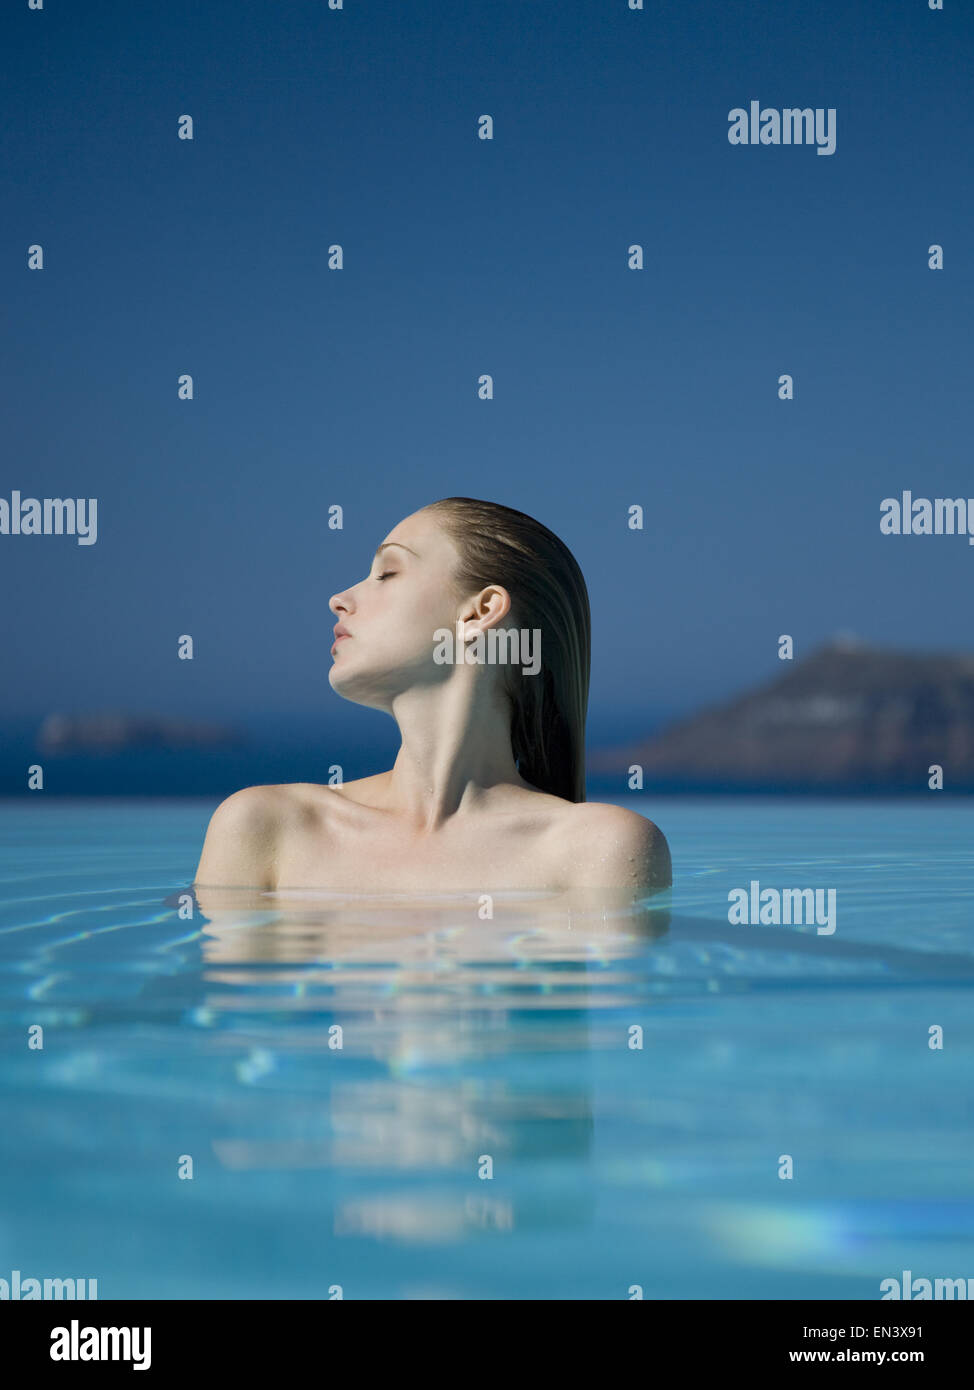 Woman in pool Stock Photo